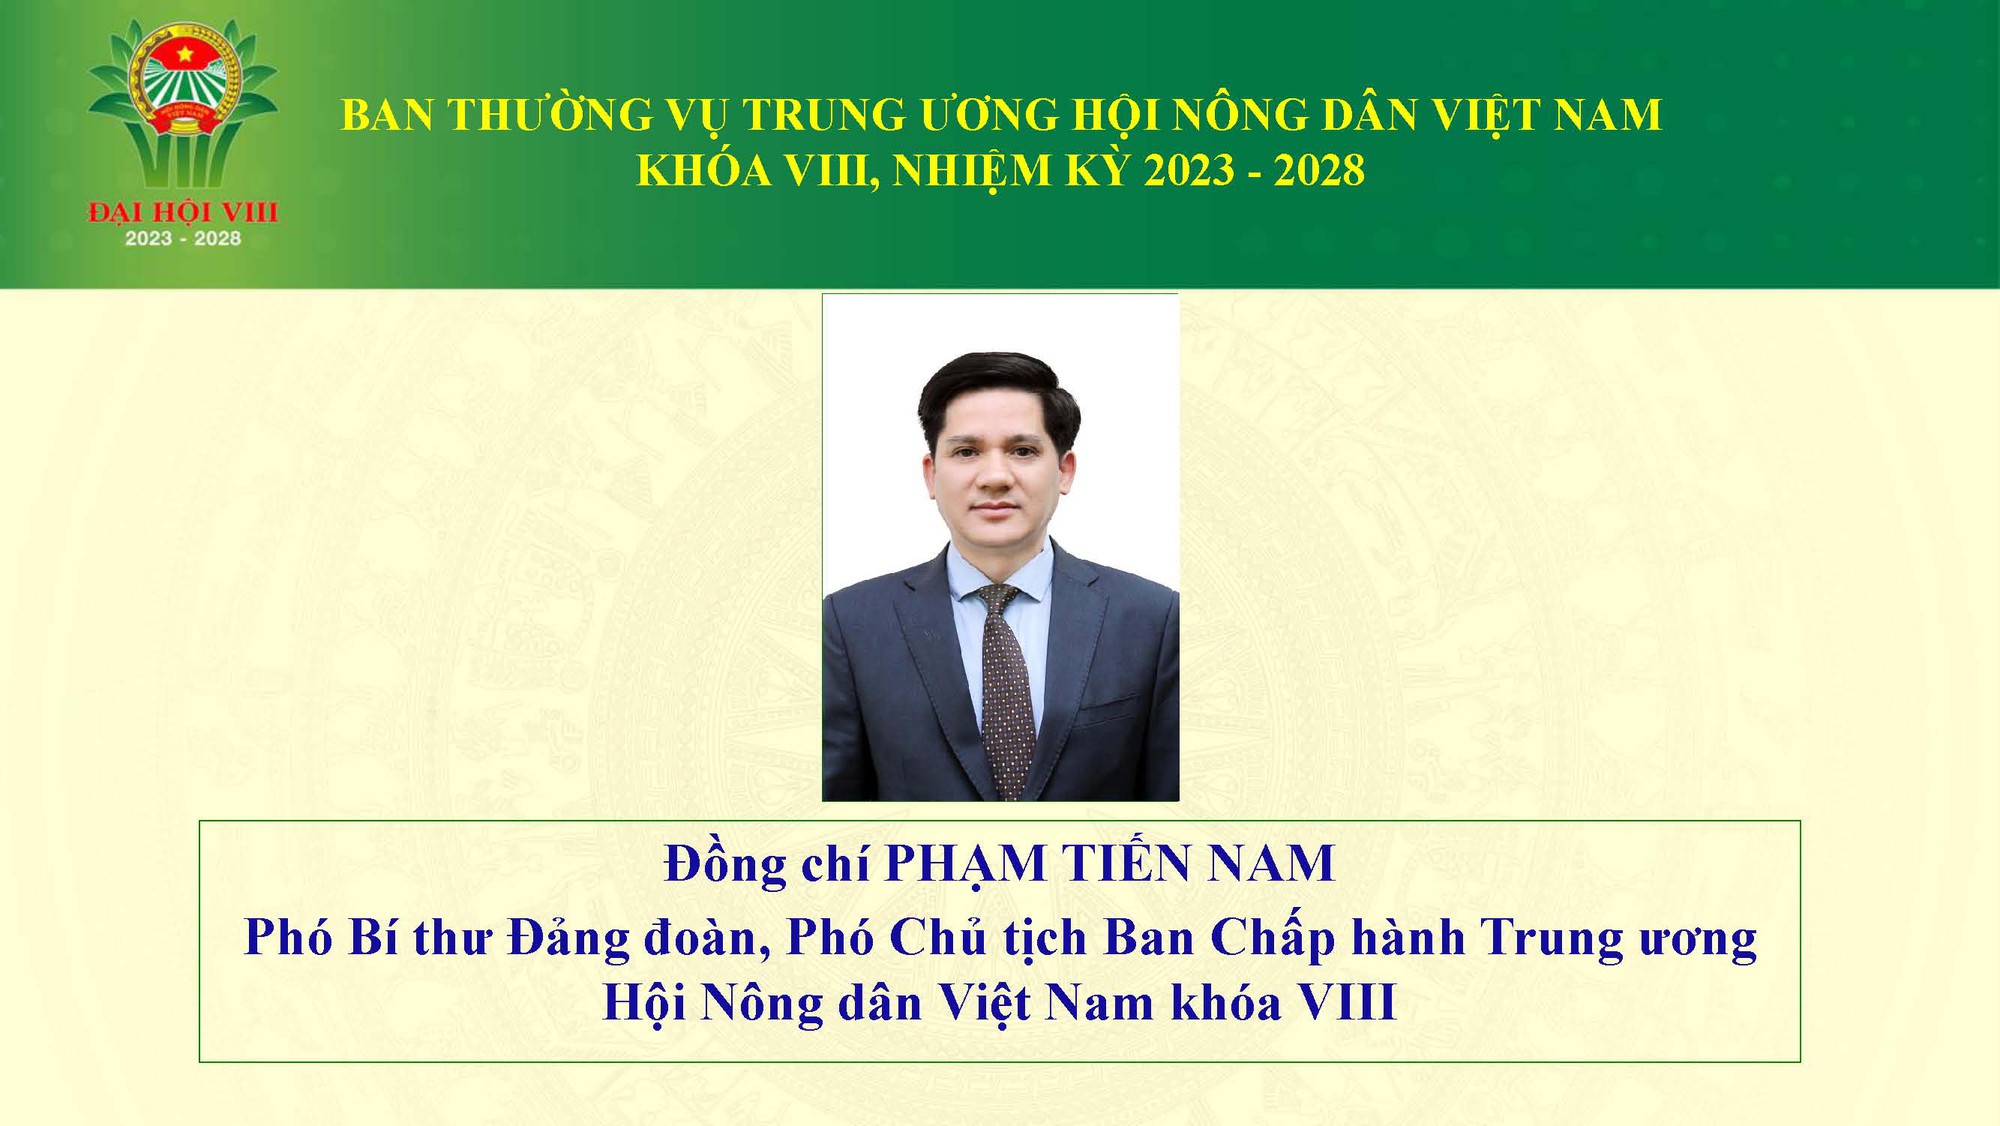 Danh sách 18 đồng chí tham gia Ban Thường vụ Trung ương Hội Nông dân Việt Nam khoá VIII - Ảnh 2.